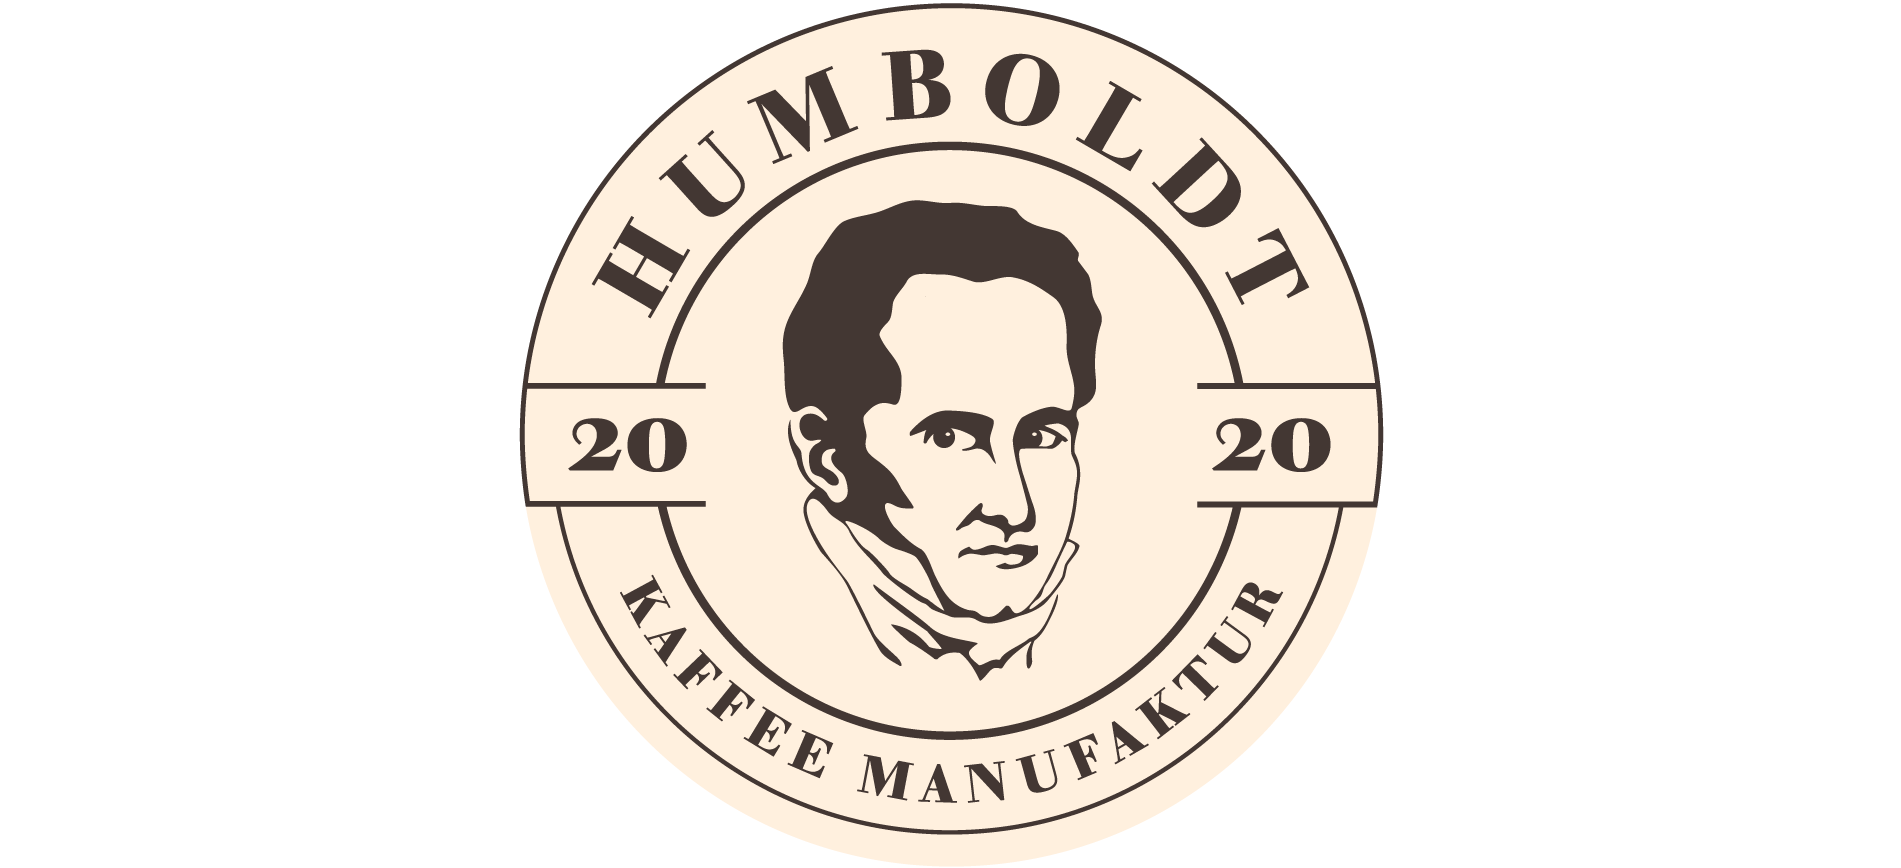 Humboldt Kaffeemanufaktur